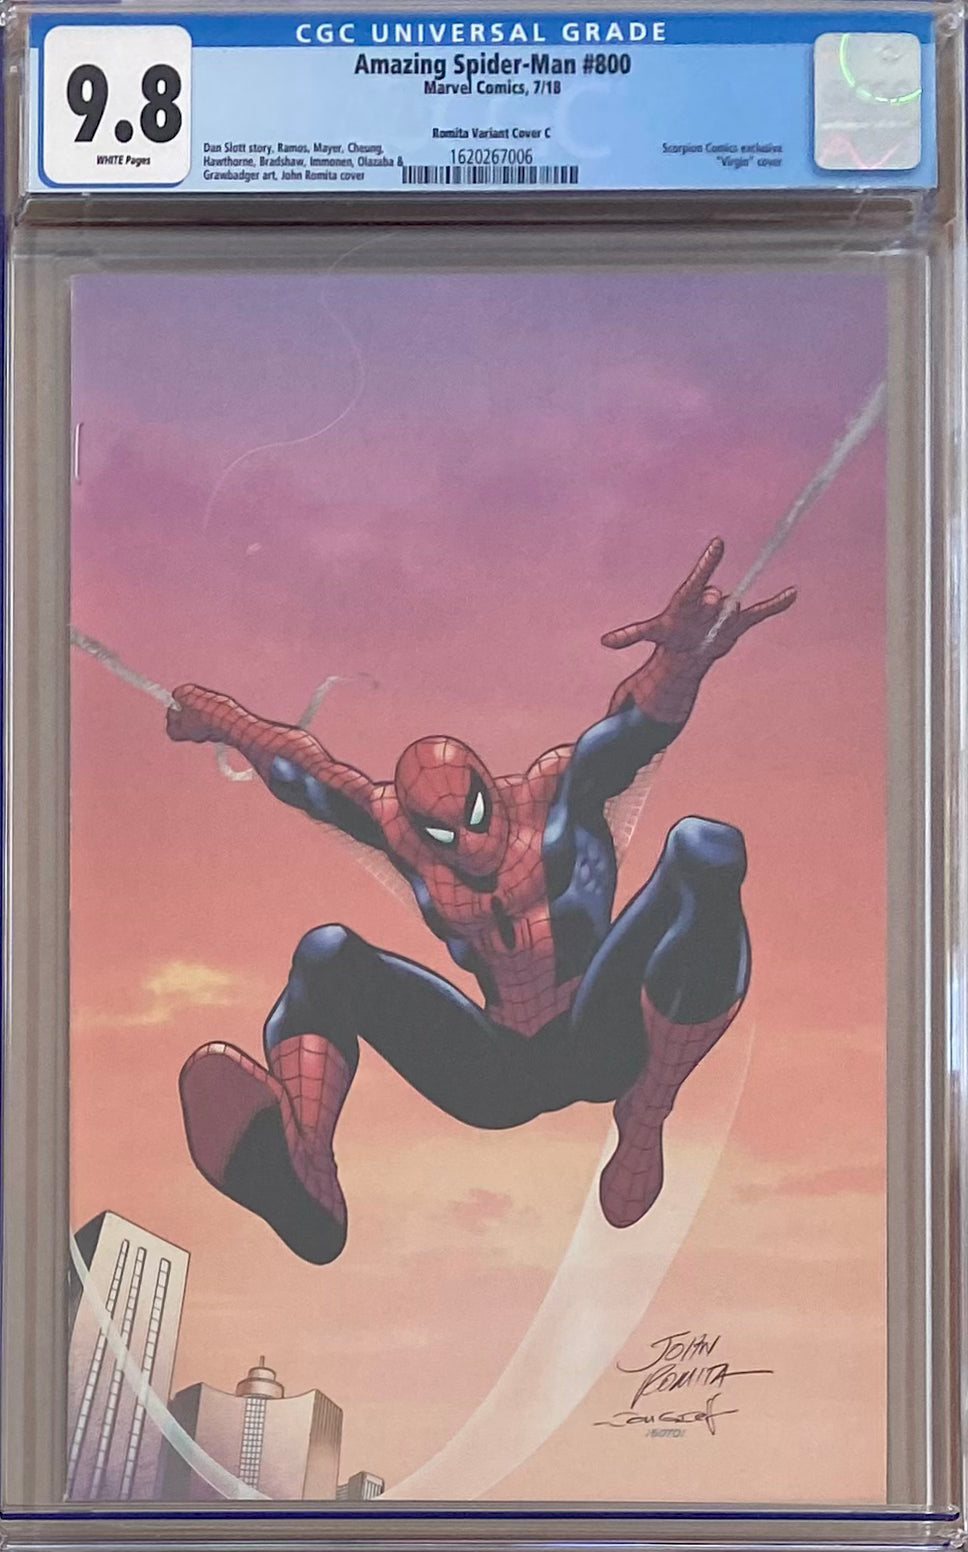 Amazing Spider-Man #800 Scorpion Comics/Romita Variant C CGC 9.8